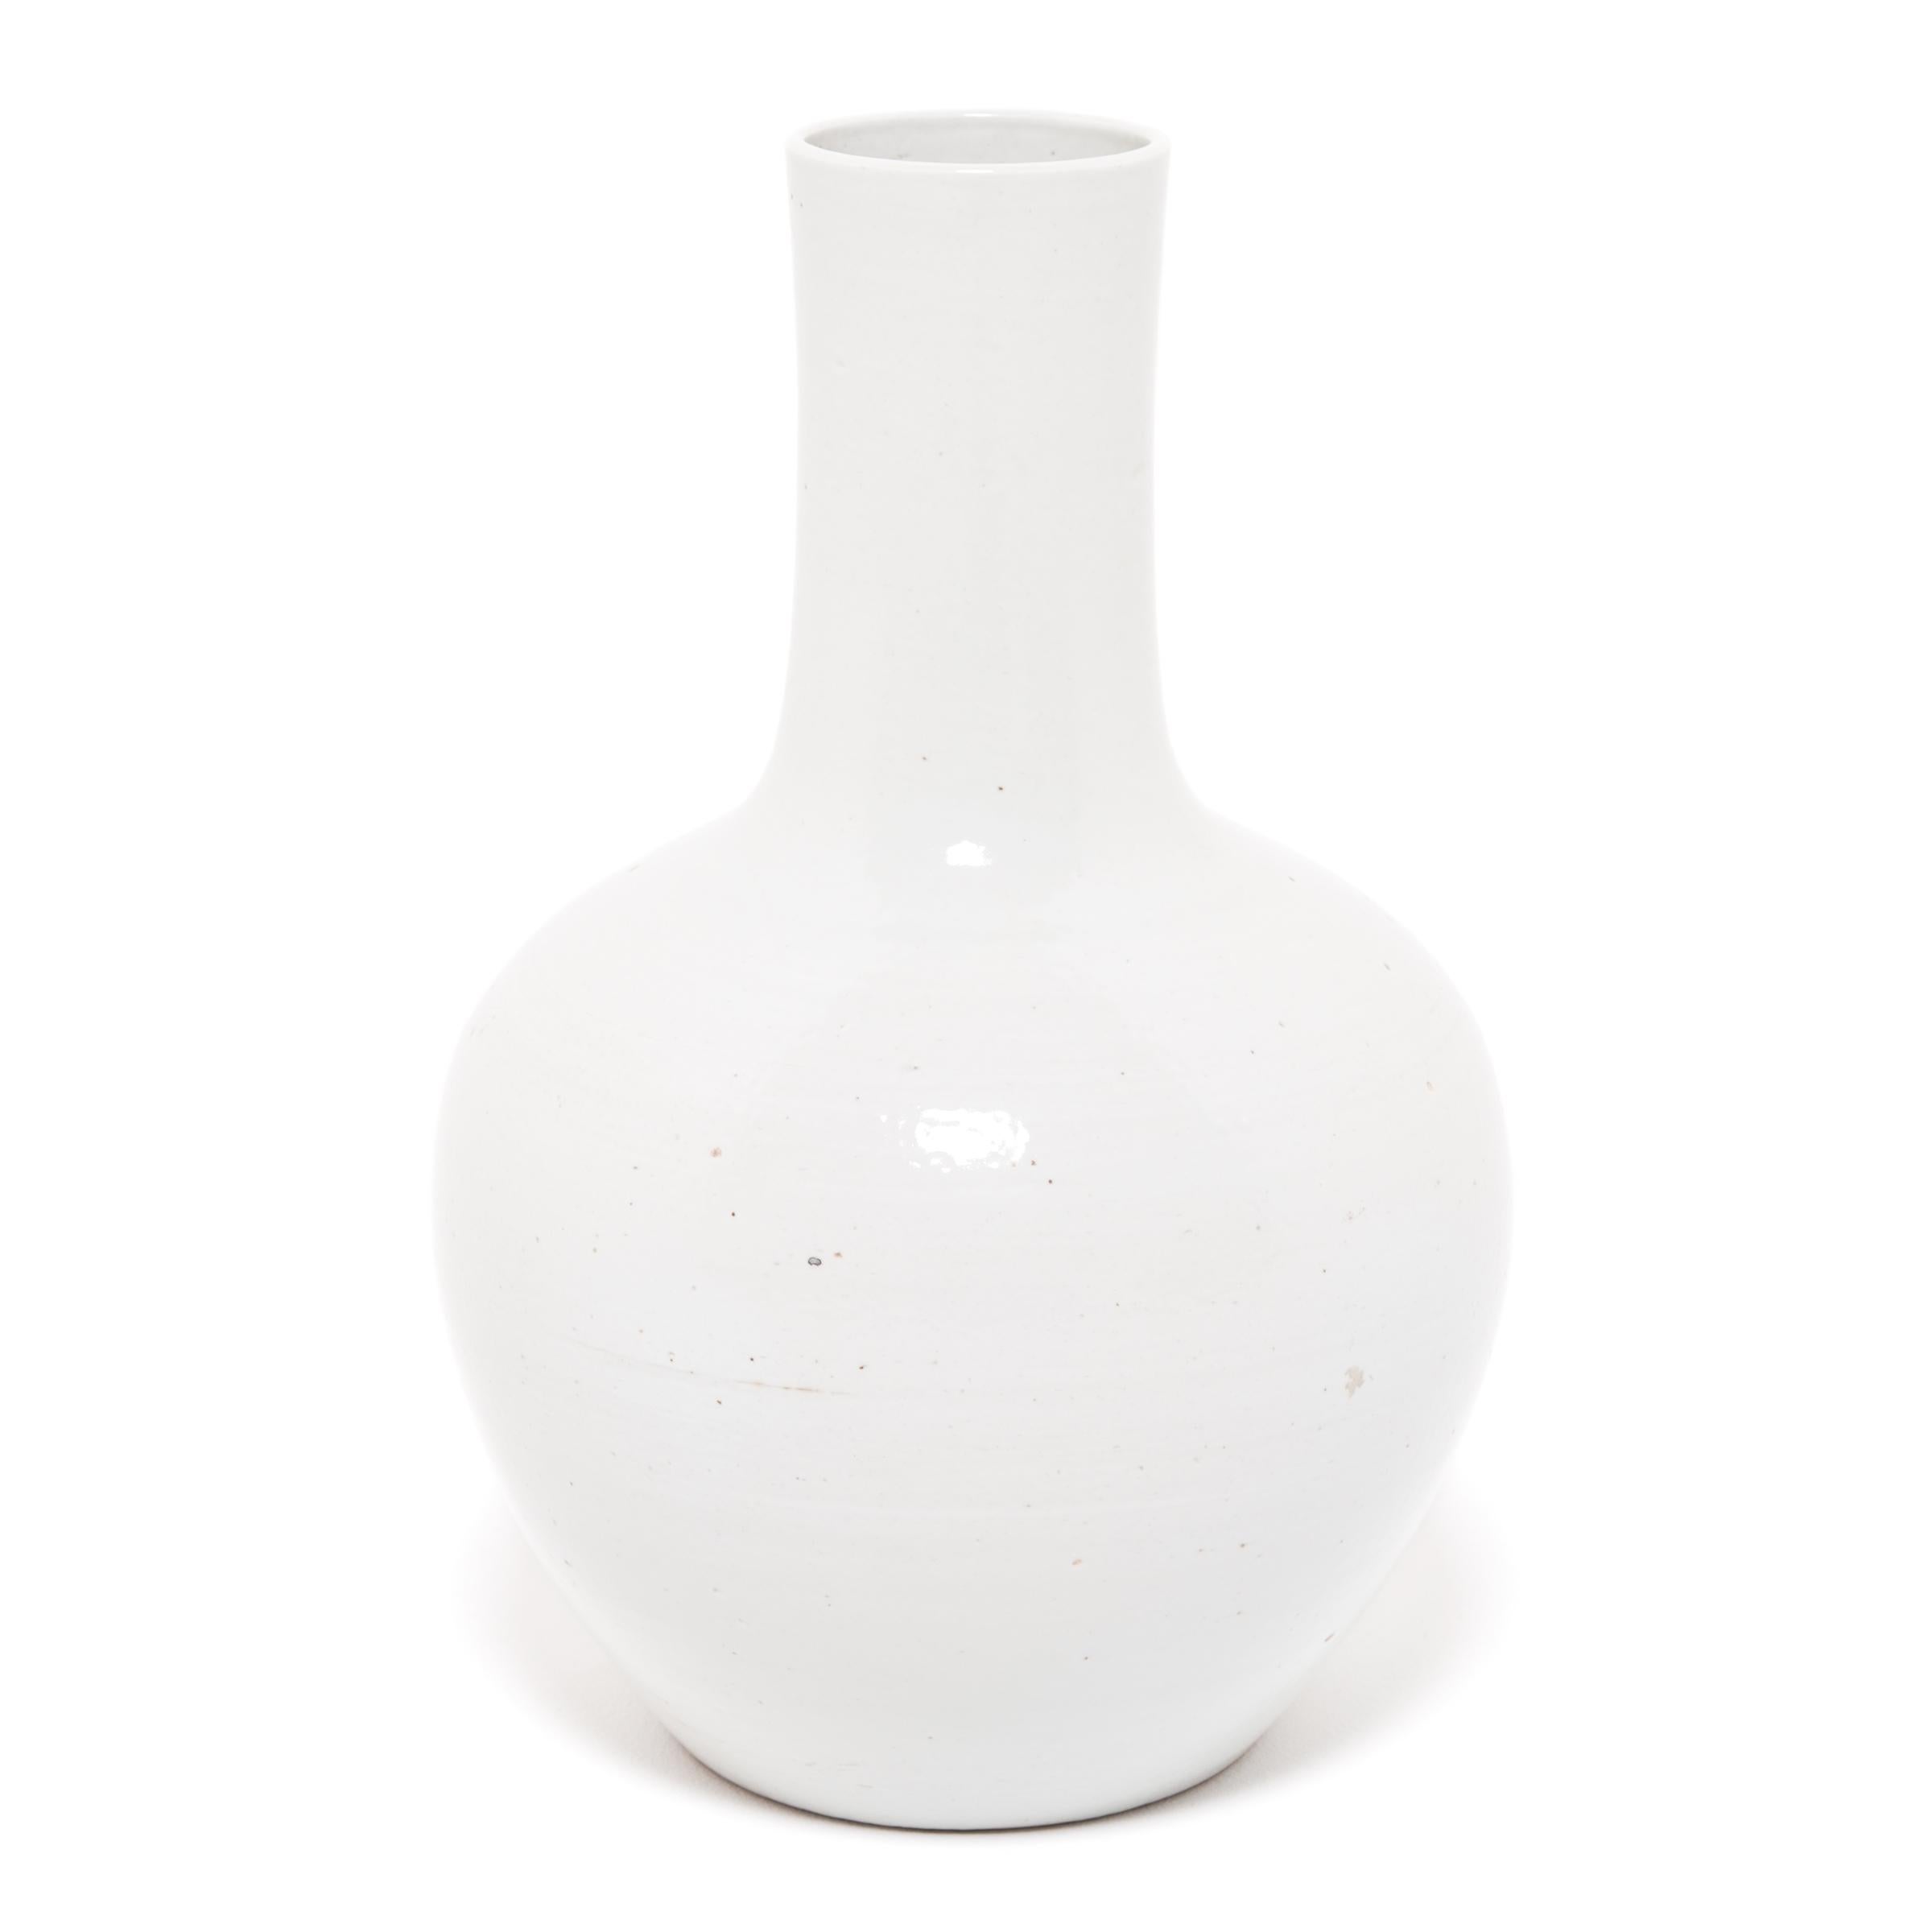 Une forme simple et moderne définit ces vases à col de bouteille, appelés ainsi en raison de leur col plus court. Ce vase charmant actualise le design classique du col de bouteille avec une silhouette plus graphique et moderne. L'éclatante glaçure